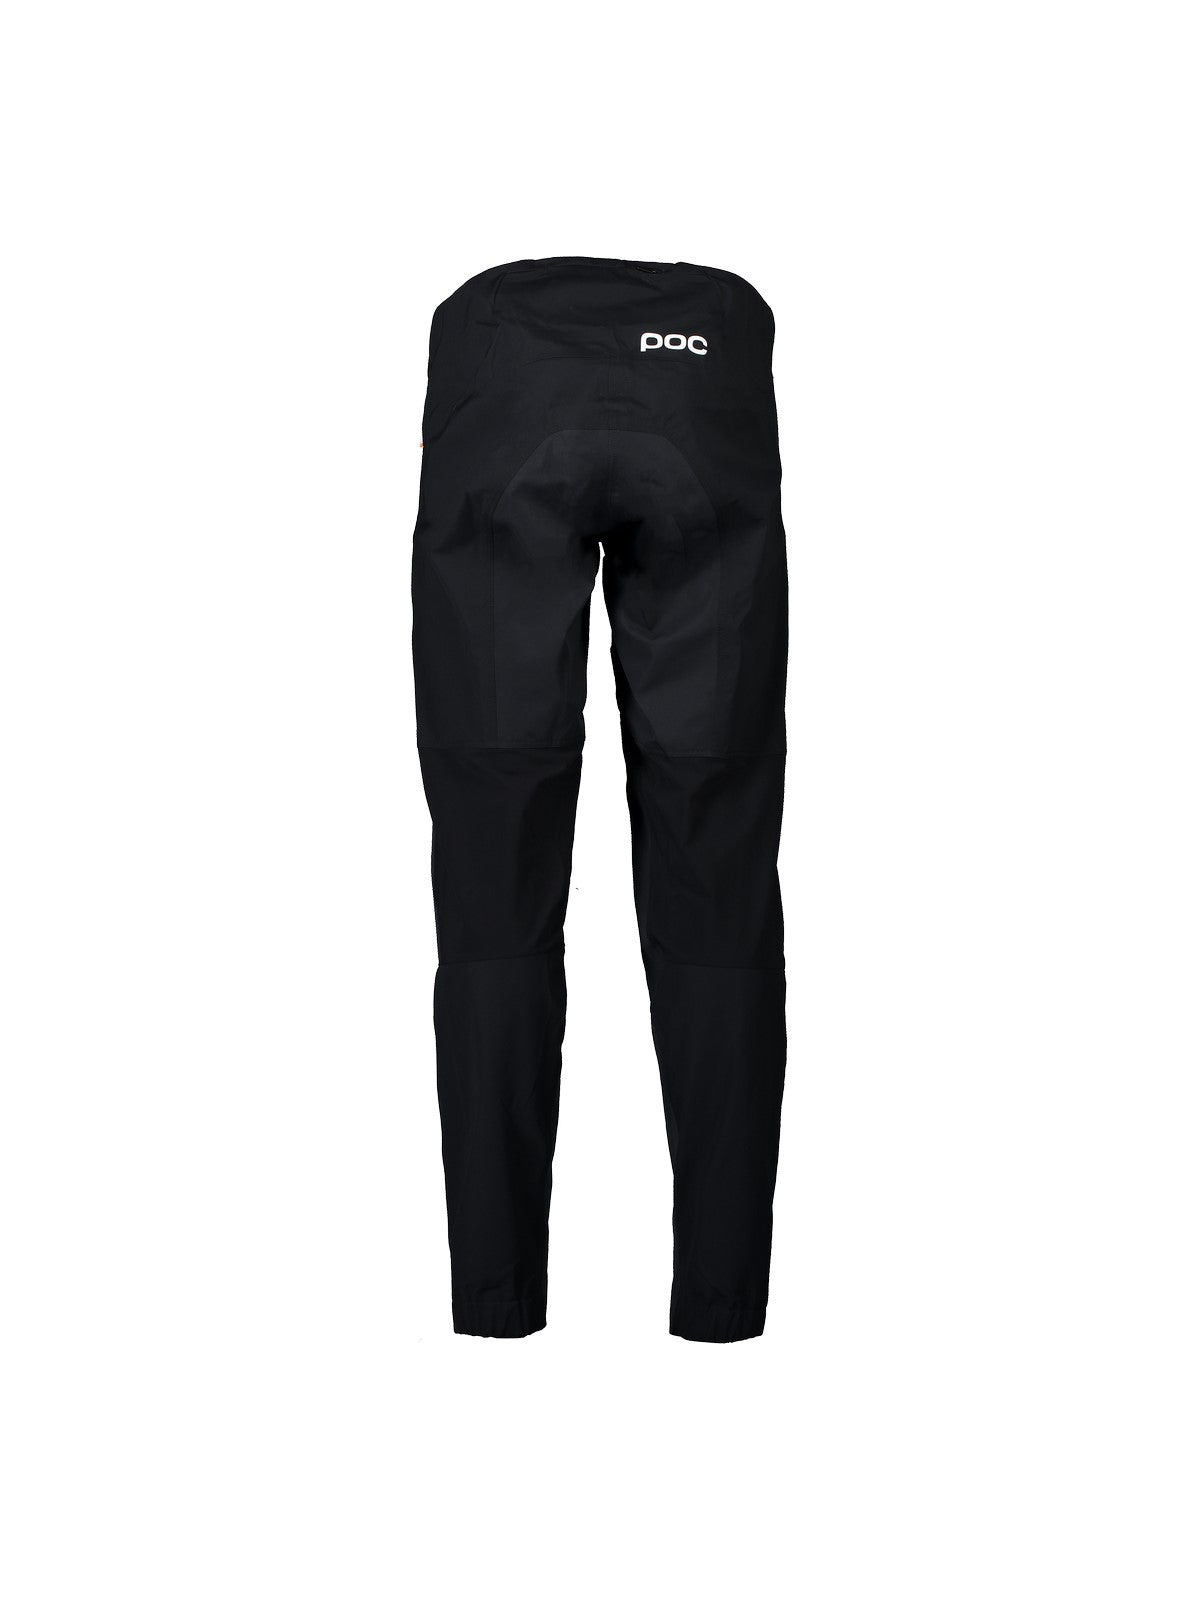 Spodnie rowerowe POC M's Ardour All-weather Pants - Ur. Black